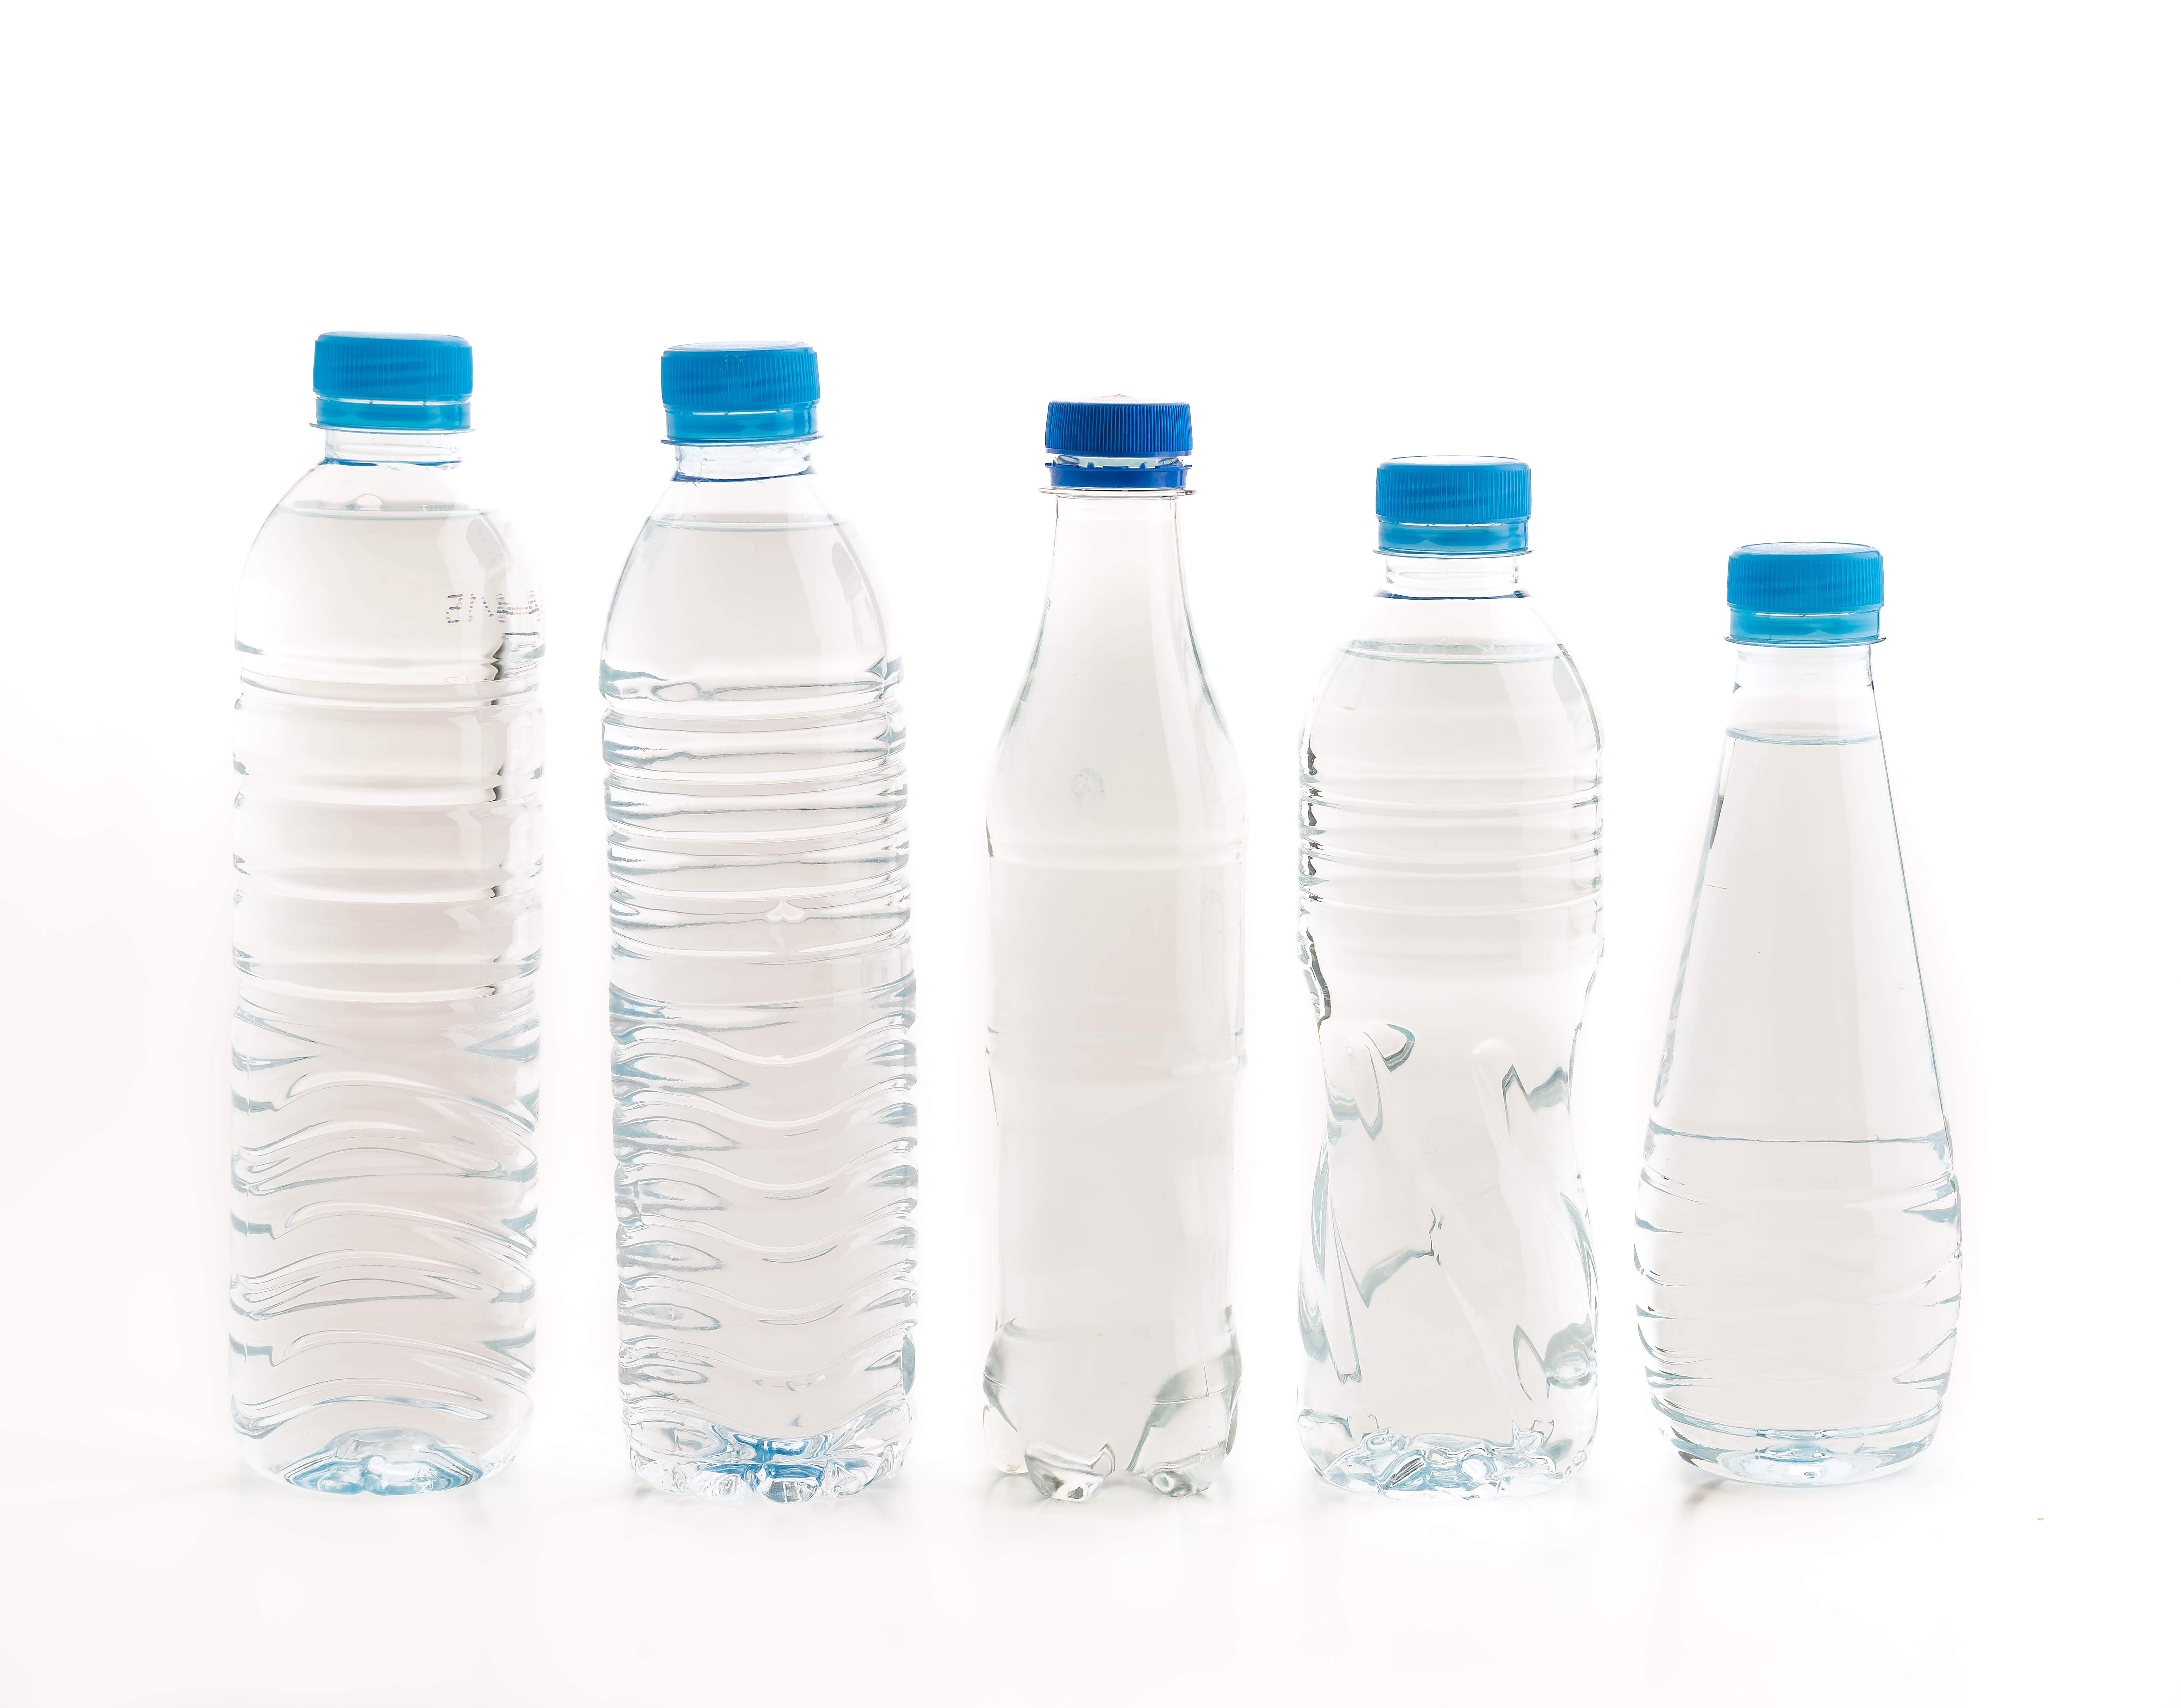 Qué se hace con el plástico reciclado?